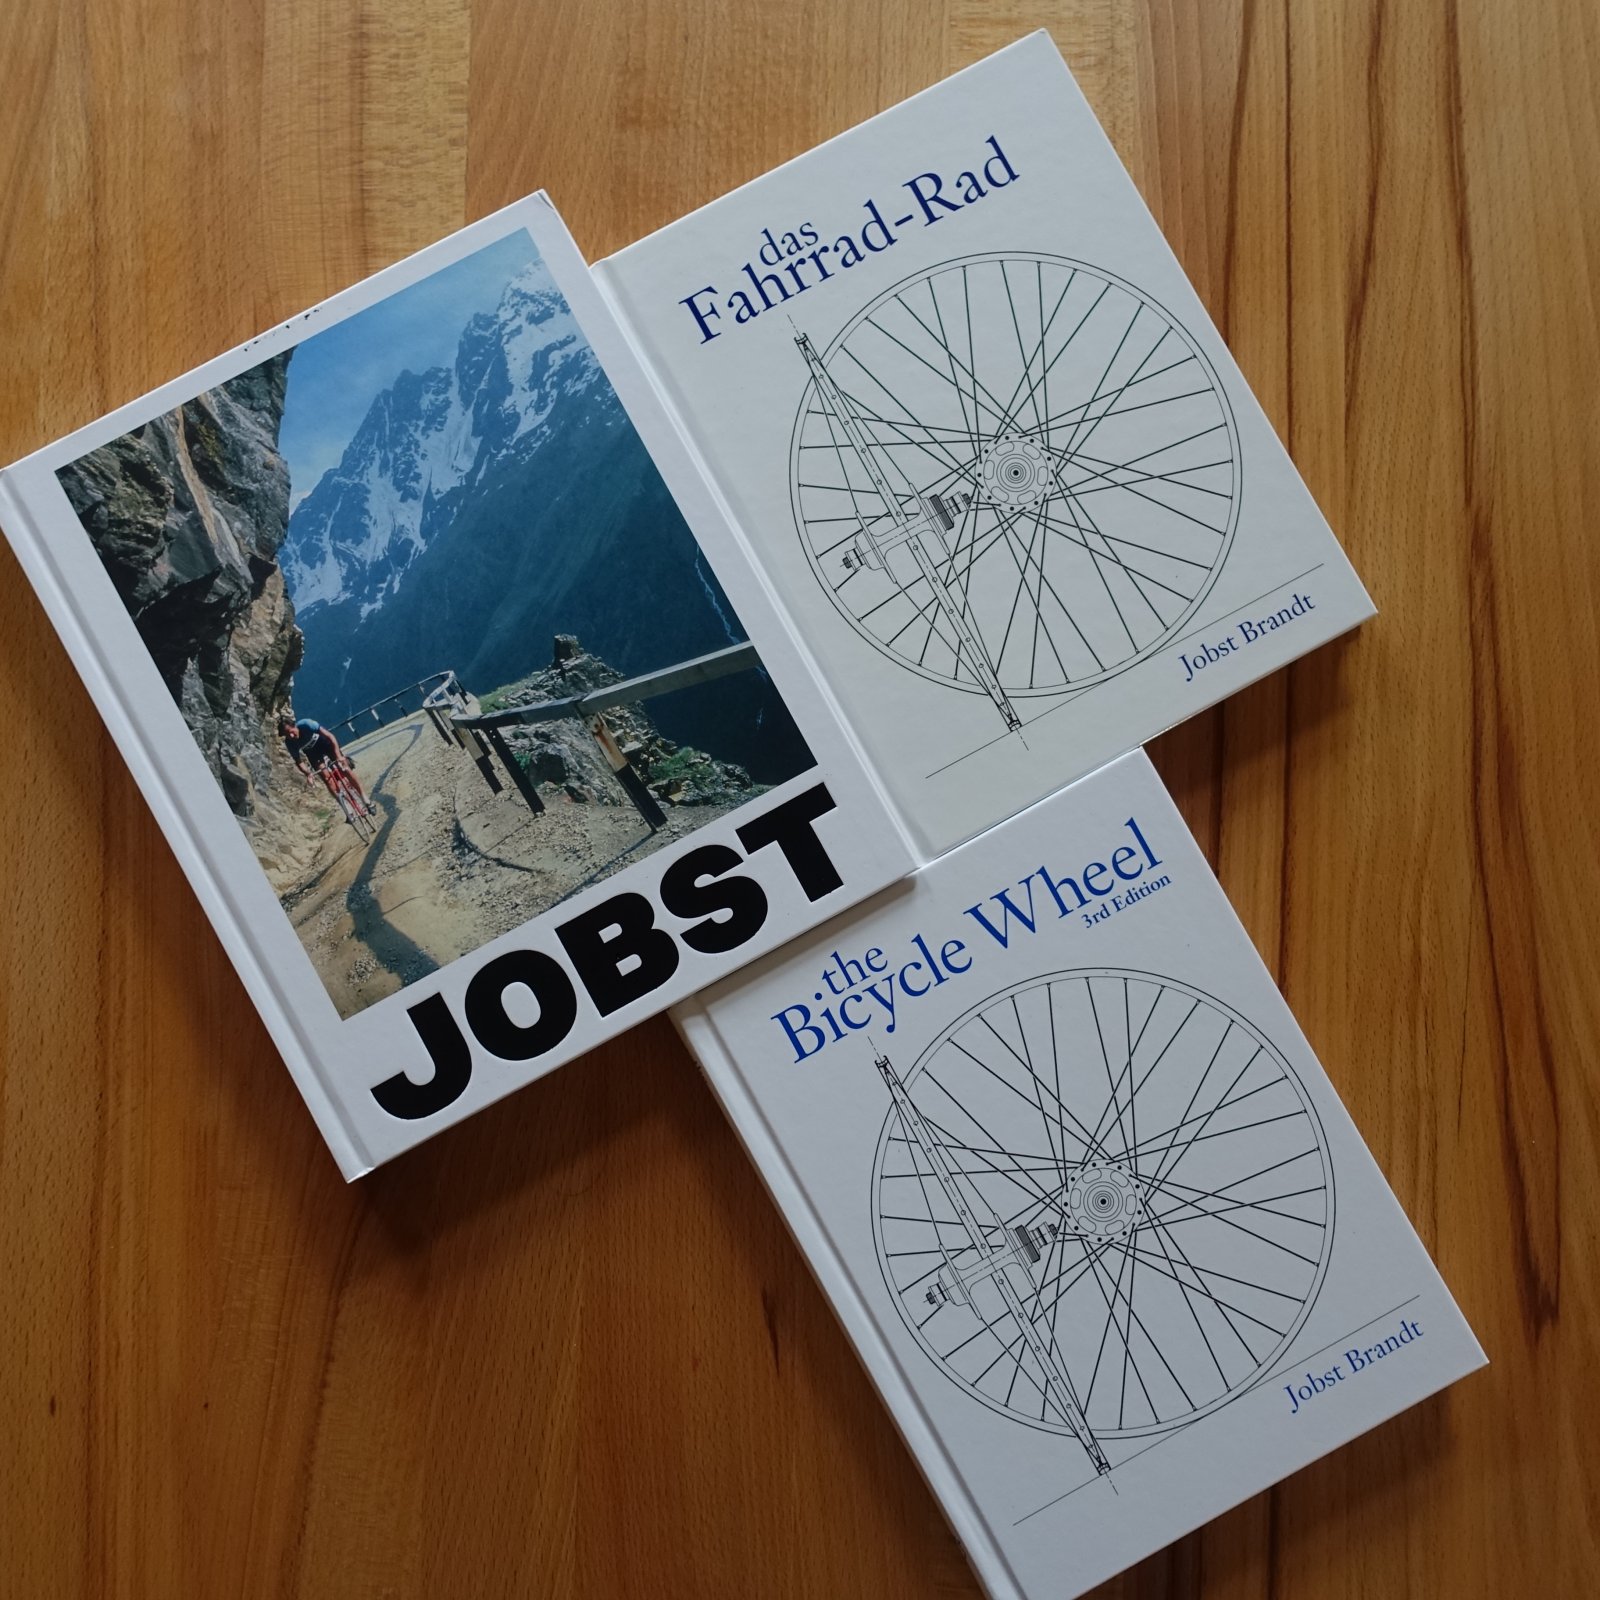 Jobst Brandt das Fahrrad-Rad the Bicycle Wheel.JPG